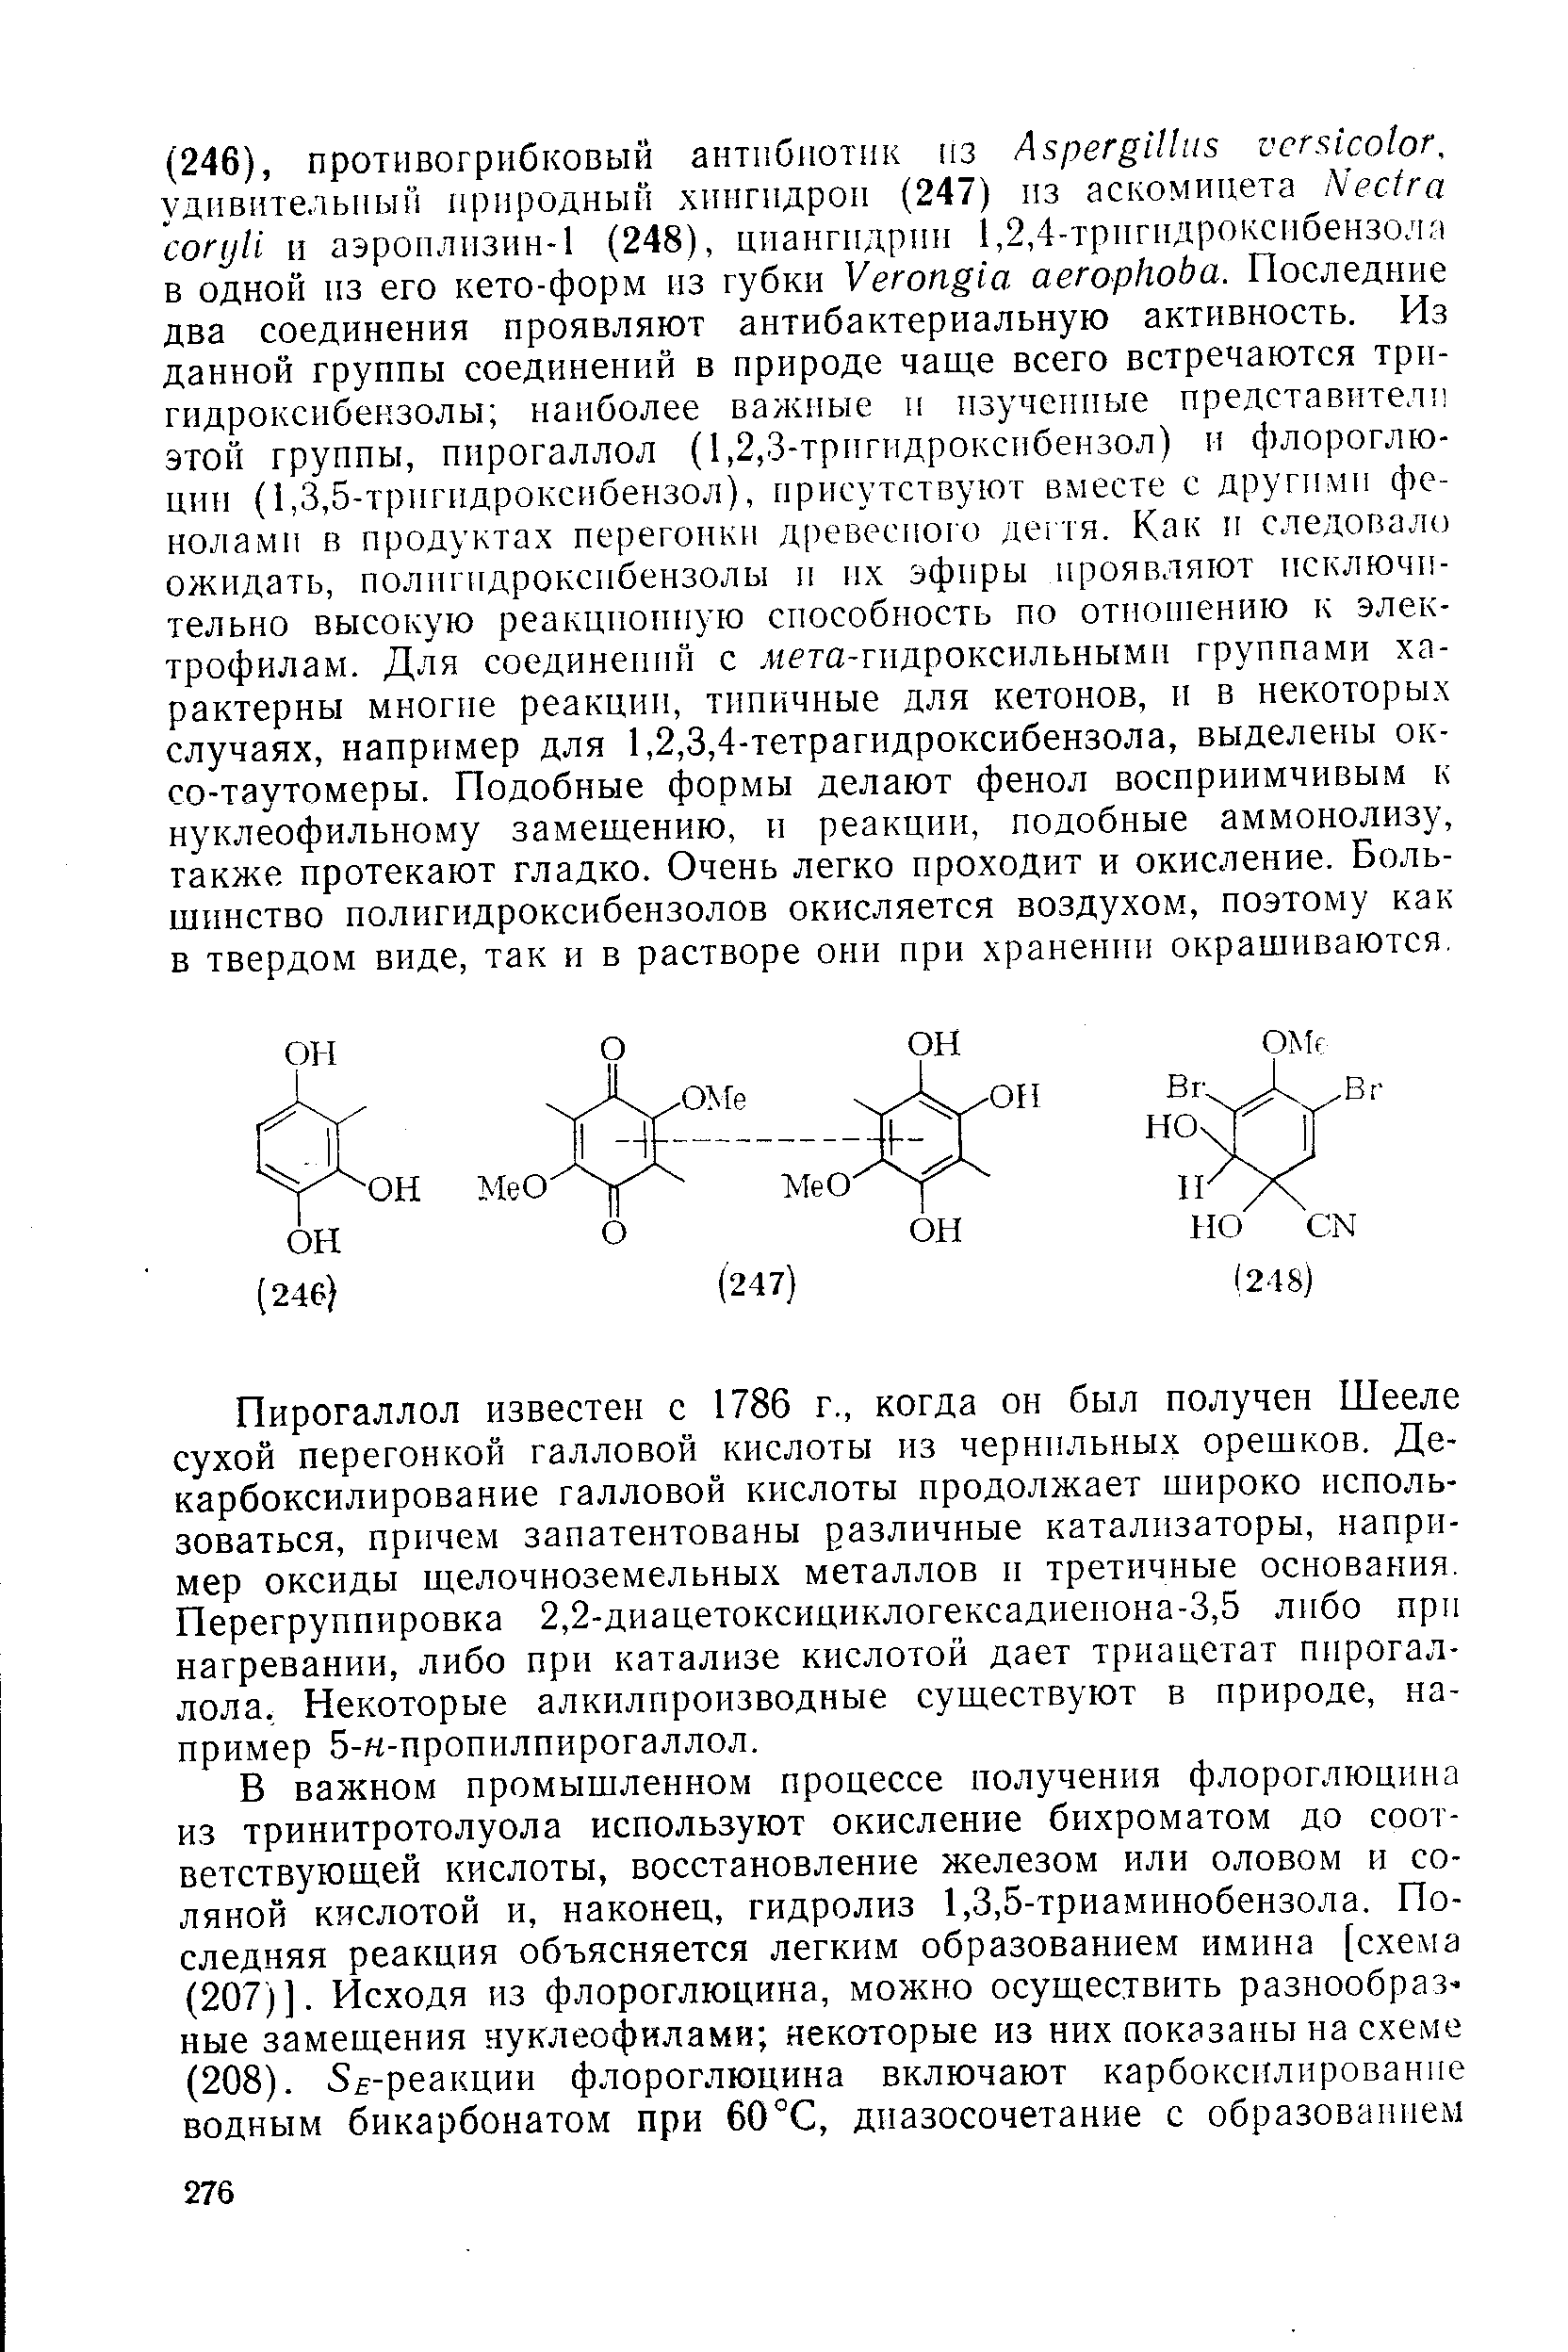 Пирогаллол известен с 1786 г., когда он был получен Шееле сухой перегонкой галловой кислоты из чернильных орешков, Декарбоксилирование галловой кислоты продолжает широко использоваться, причем запатентованы различные катализаторы, например оксиды щелочноземельных металлов и третичные основания. Перегруппировка 2,2-диацетоксициклогексадиенона-3,5 либо при нагревании, либо при катализе кислотой дает триацетат пирогаллола, Некоторые алкилпроизводные существуют в природе, например 5-н-пропилпирогаллол.